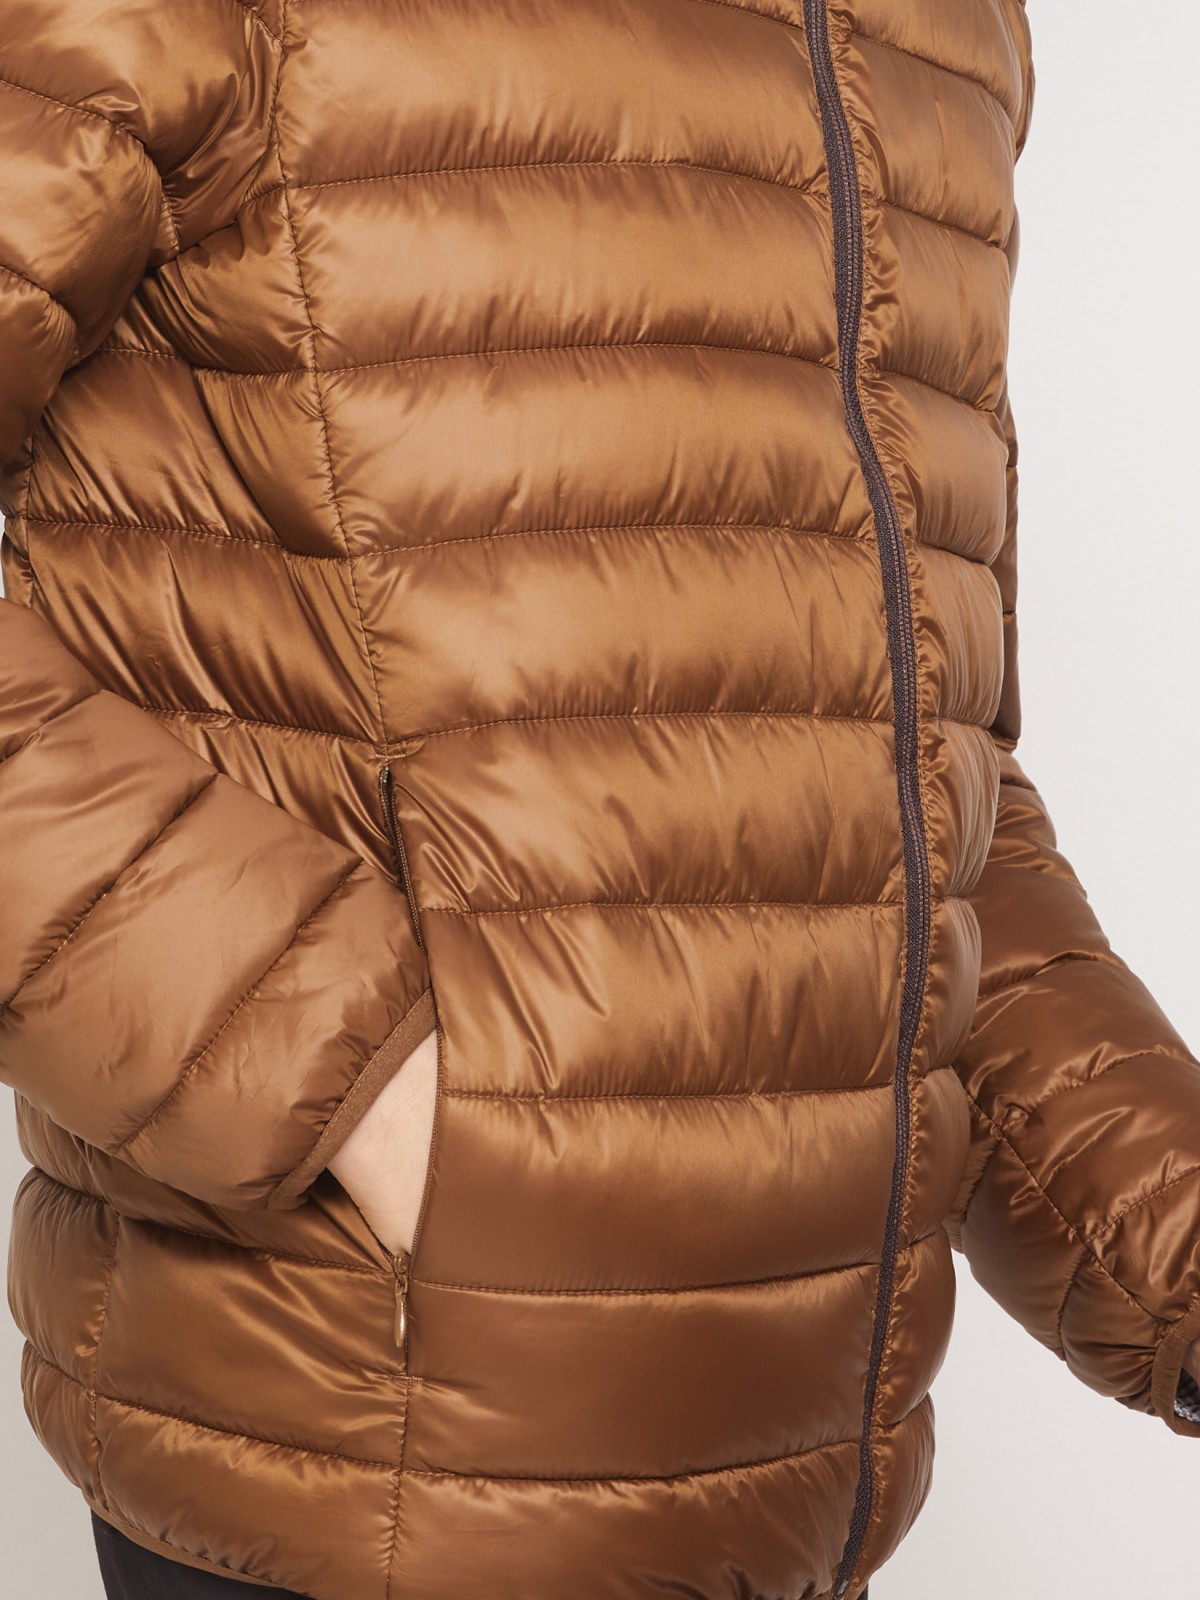 Ультралёгкая стёганая куртка с воротником-стойкой zolla 011335102214, цвет горчичный, размер S - фото 5